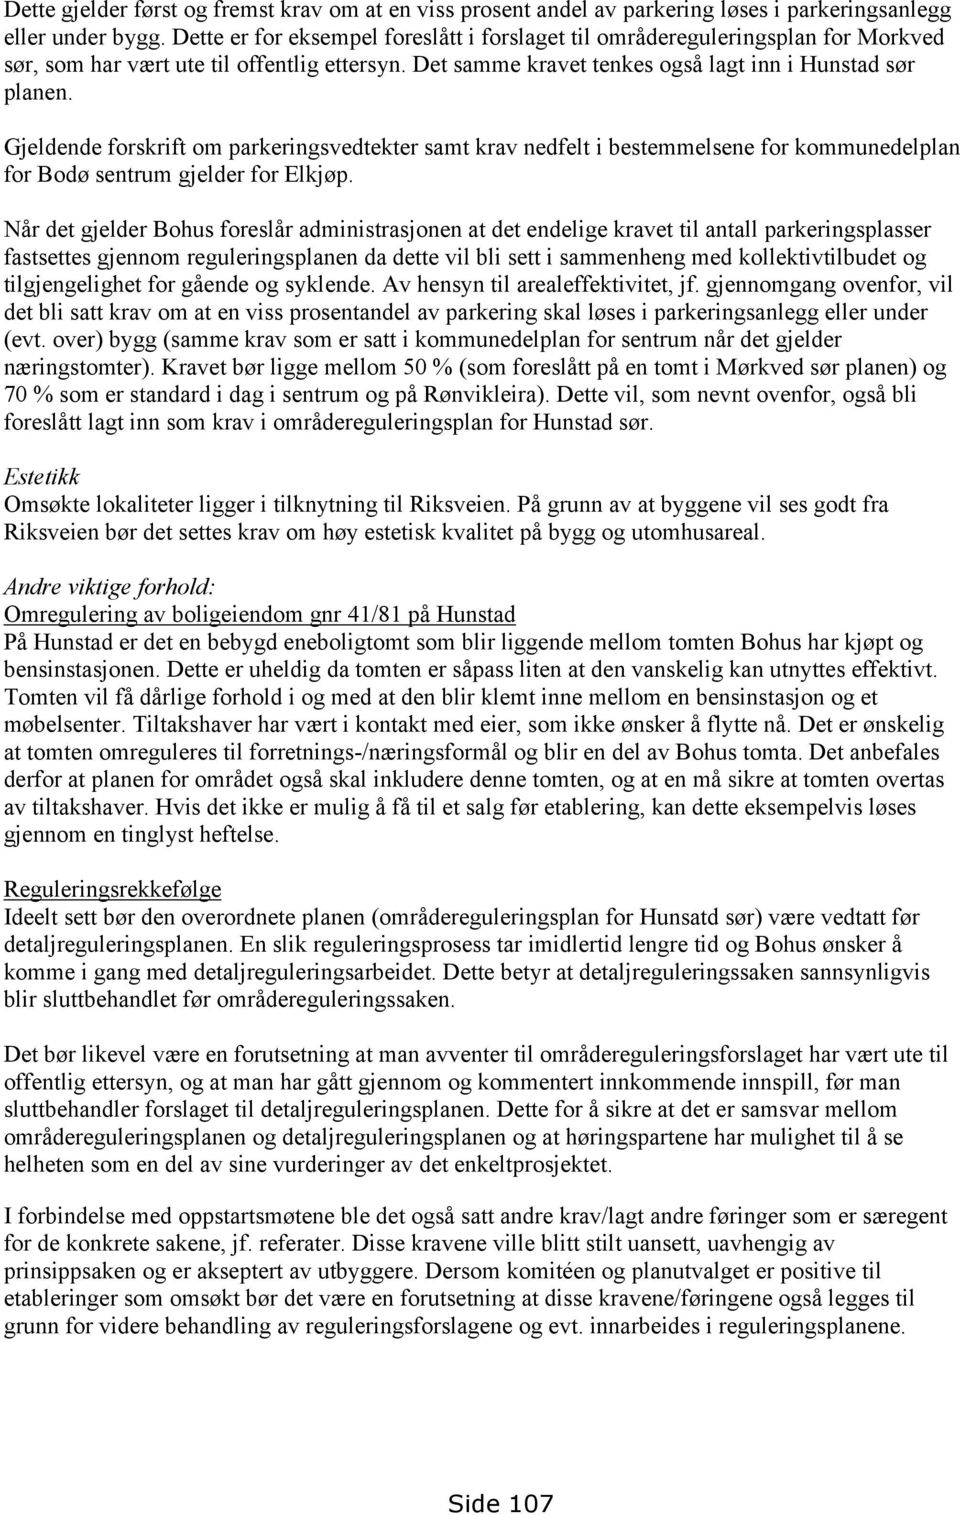 Gjeldende forskrift om parkeringsvedtekter samt krav nedfelt i bestemmelsene for kommunedelplan for Bodø sentrum gjelder for Elkjøp.